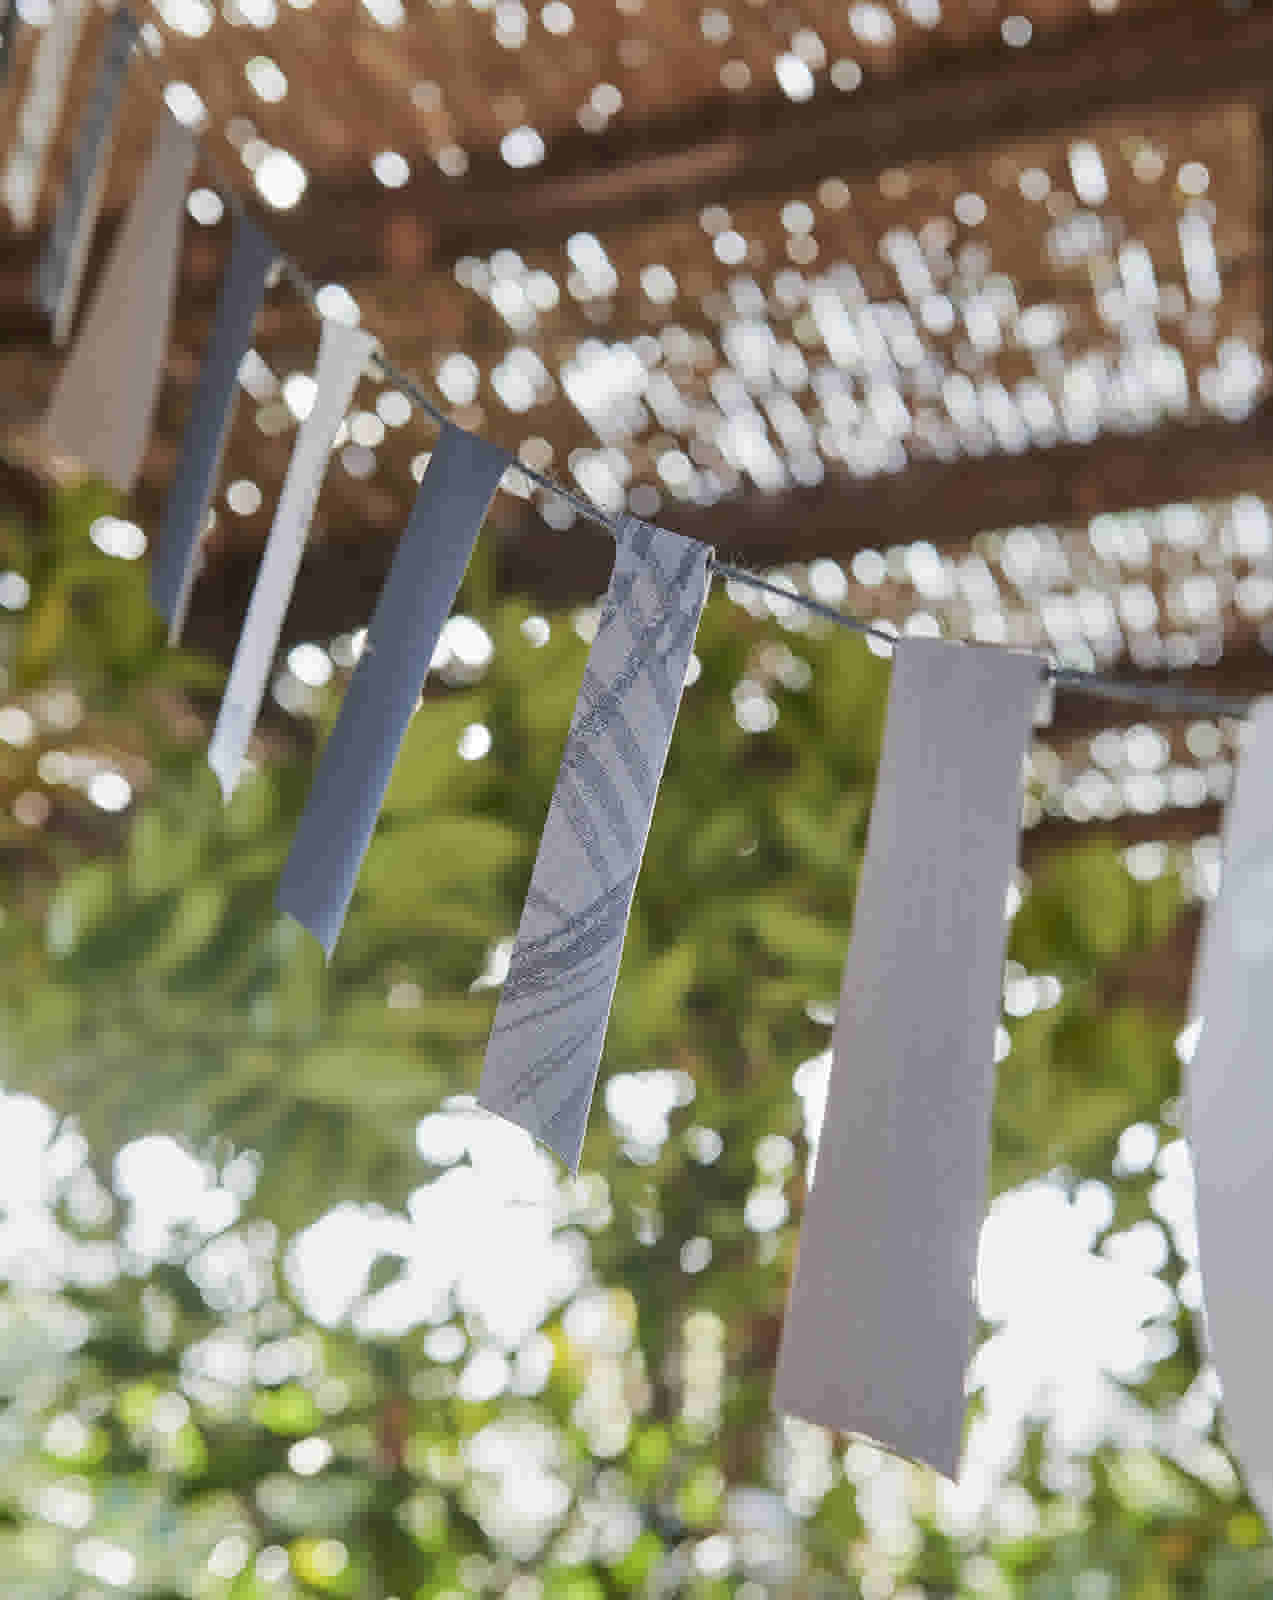 Tuinfeest ideeën: slinger maken van behang